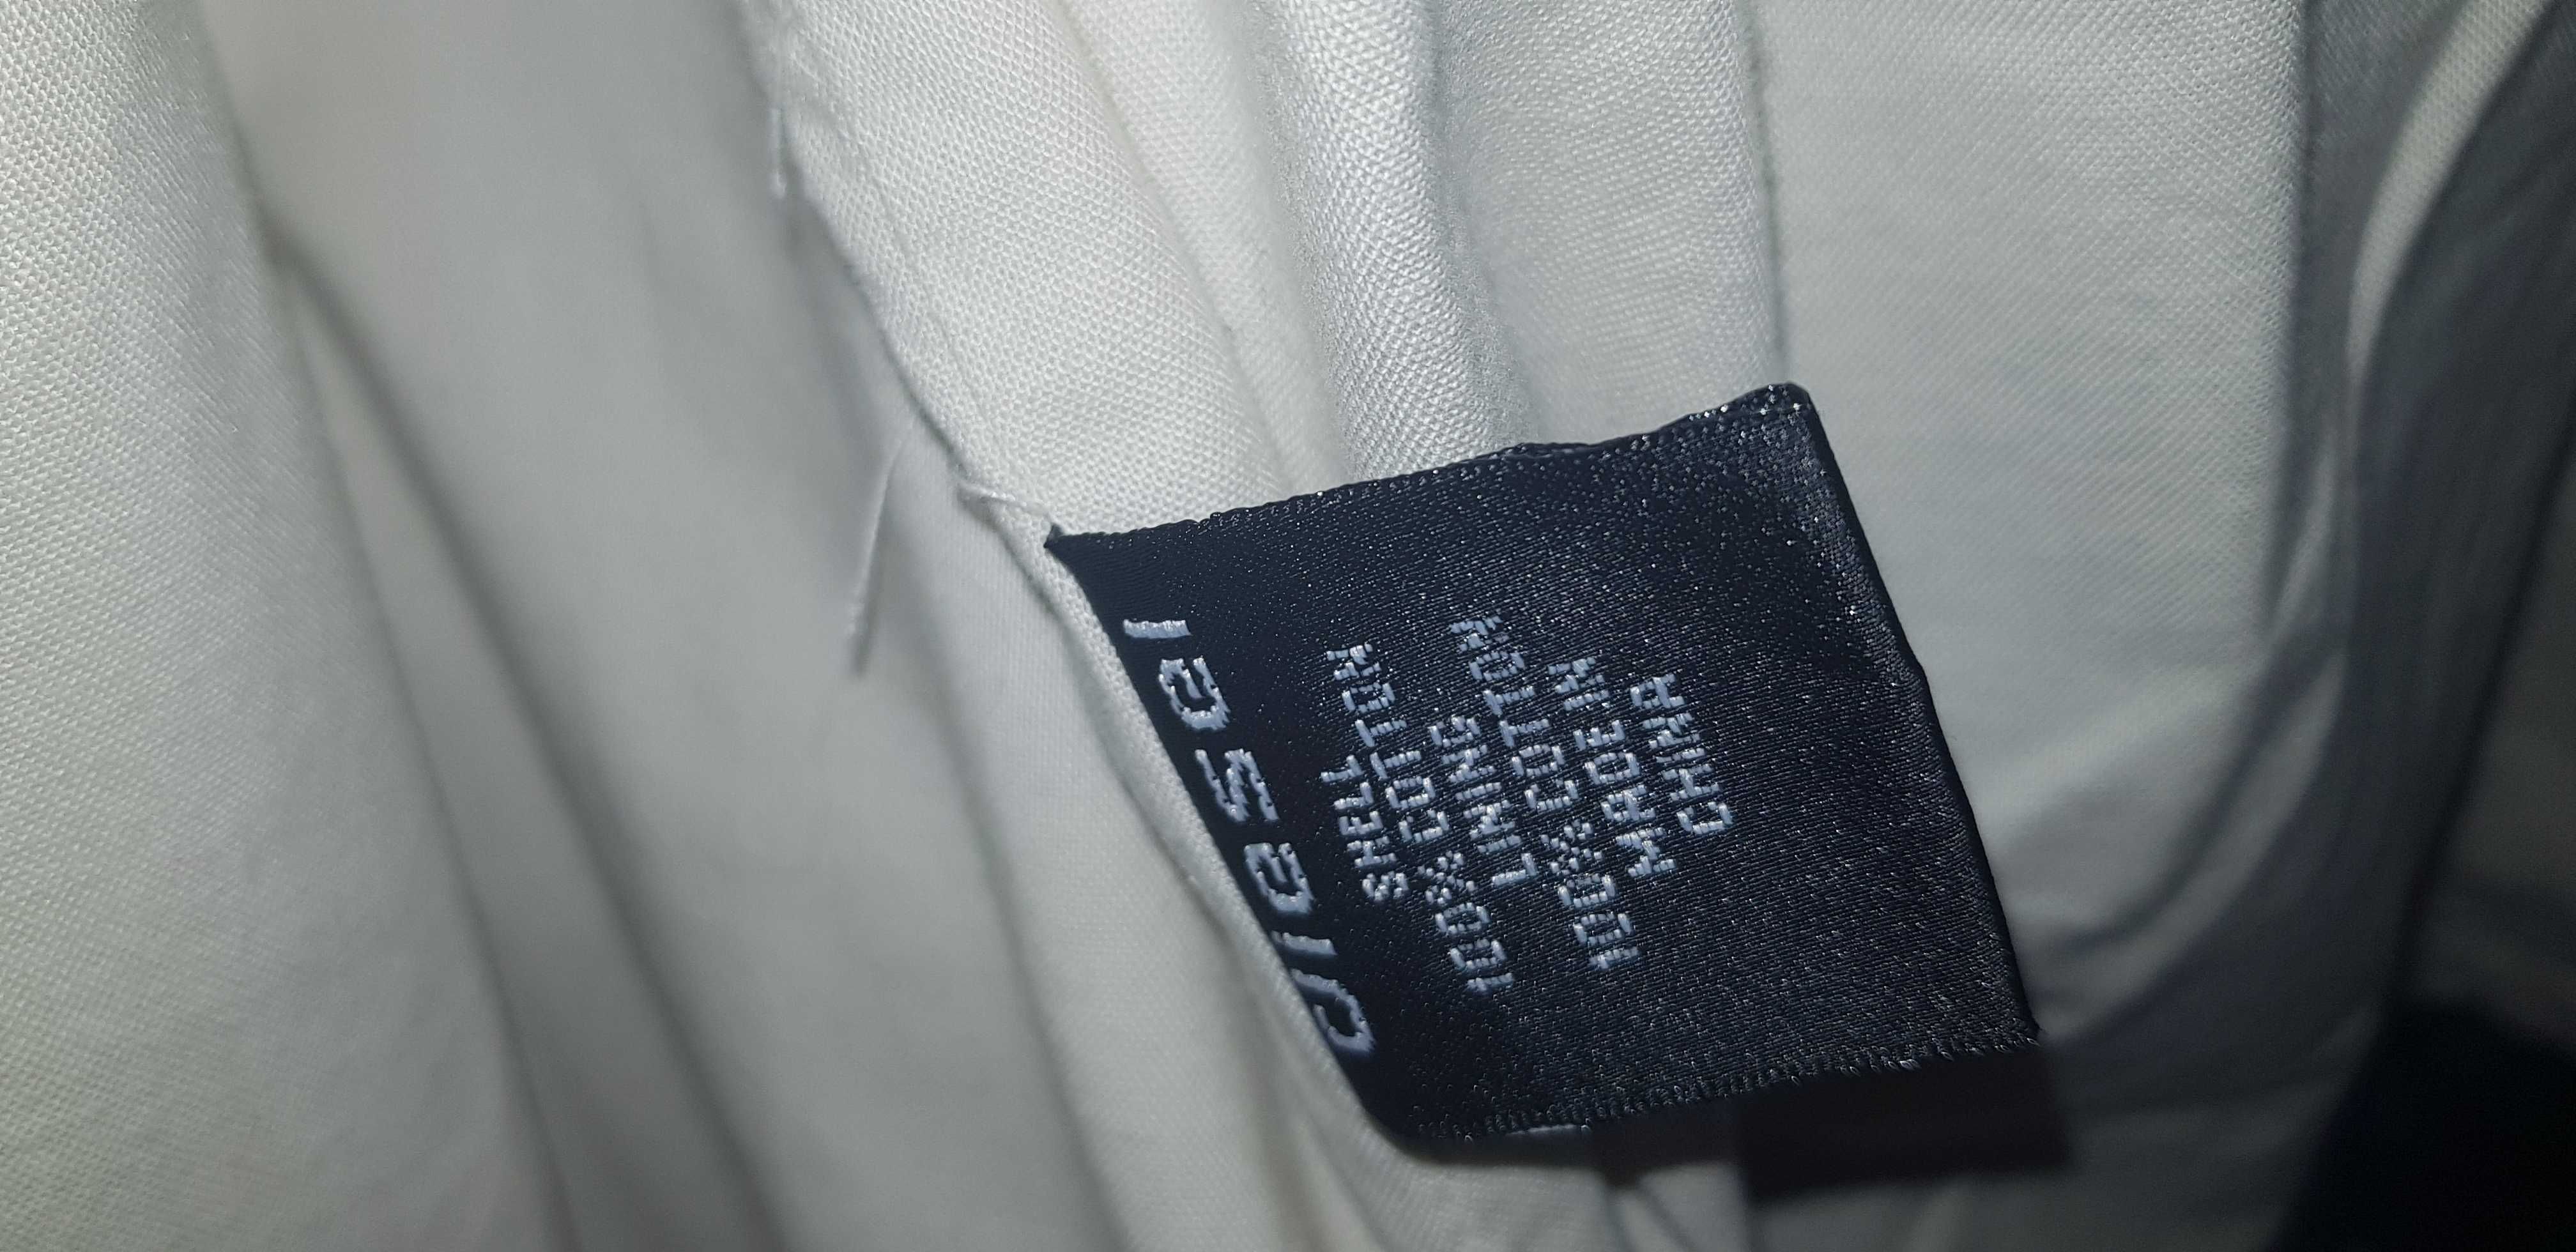 Bluza męska marki Diesel- rozmiar XL